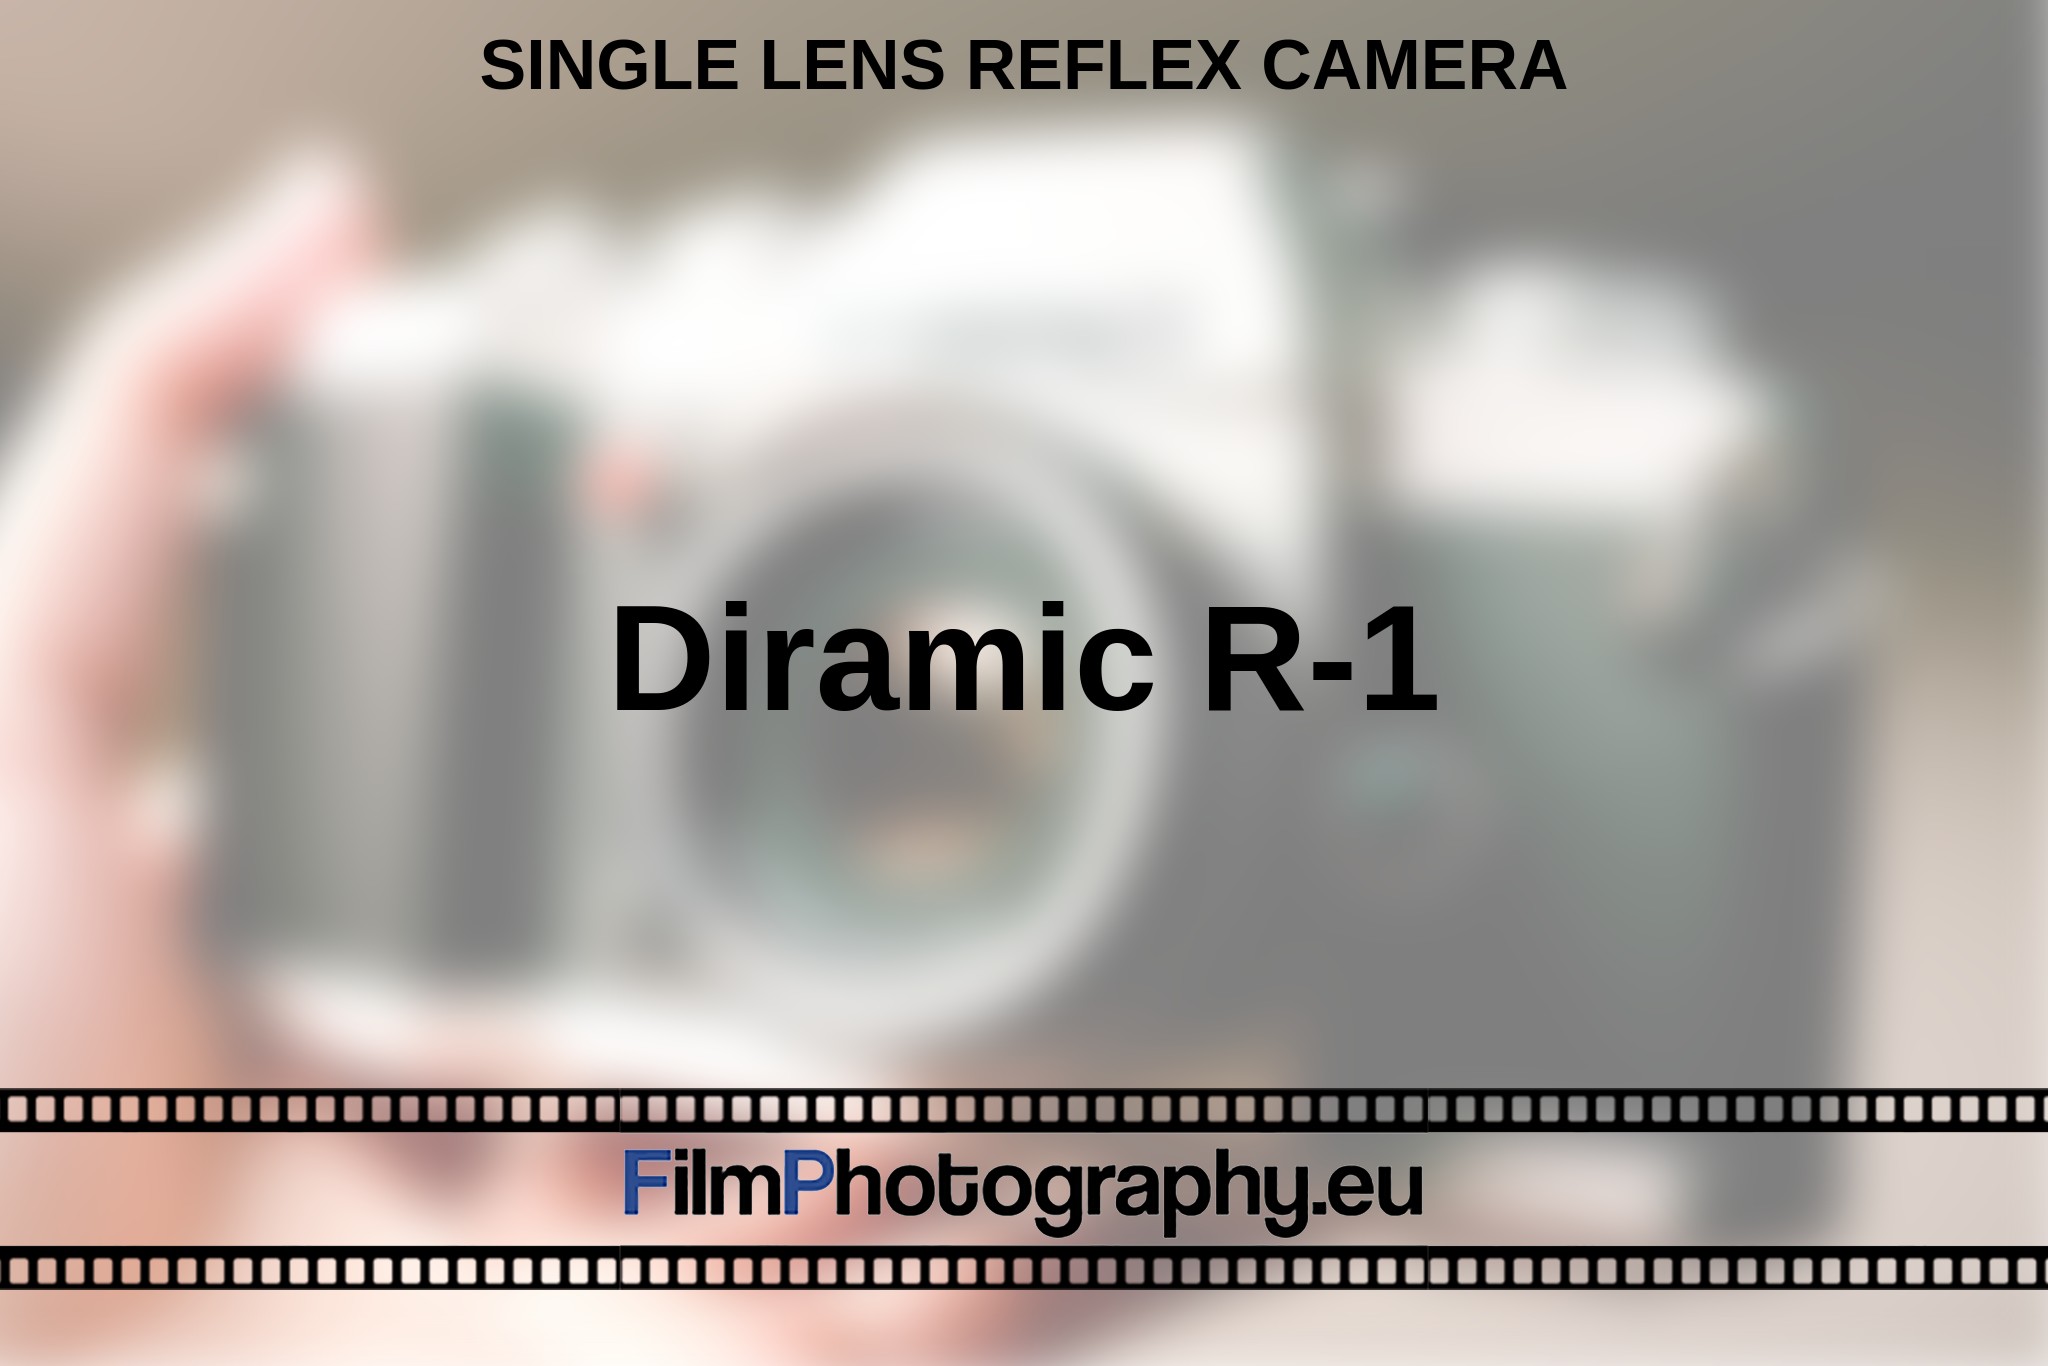 diramic-r-1-single-lens-reflex-camera-en-bnv.jpg